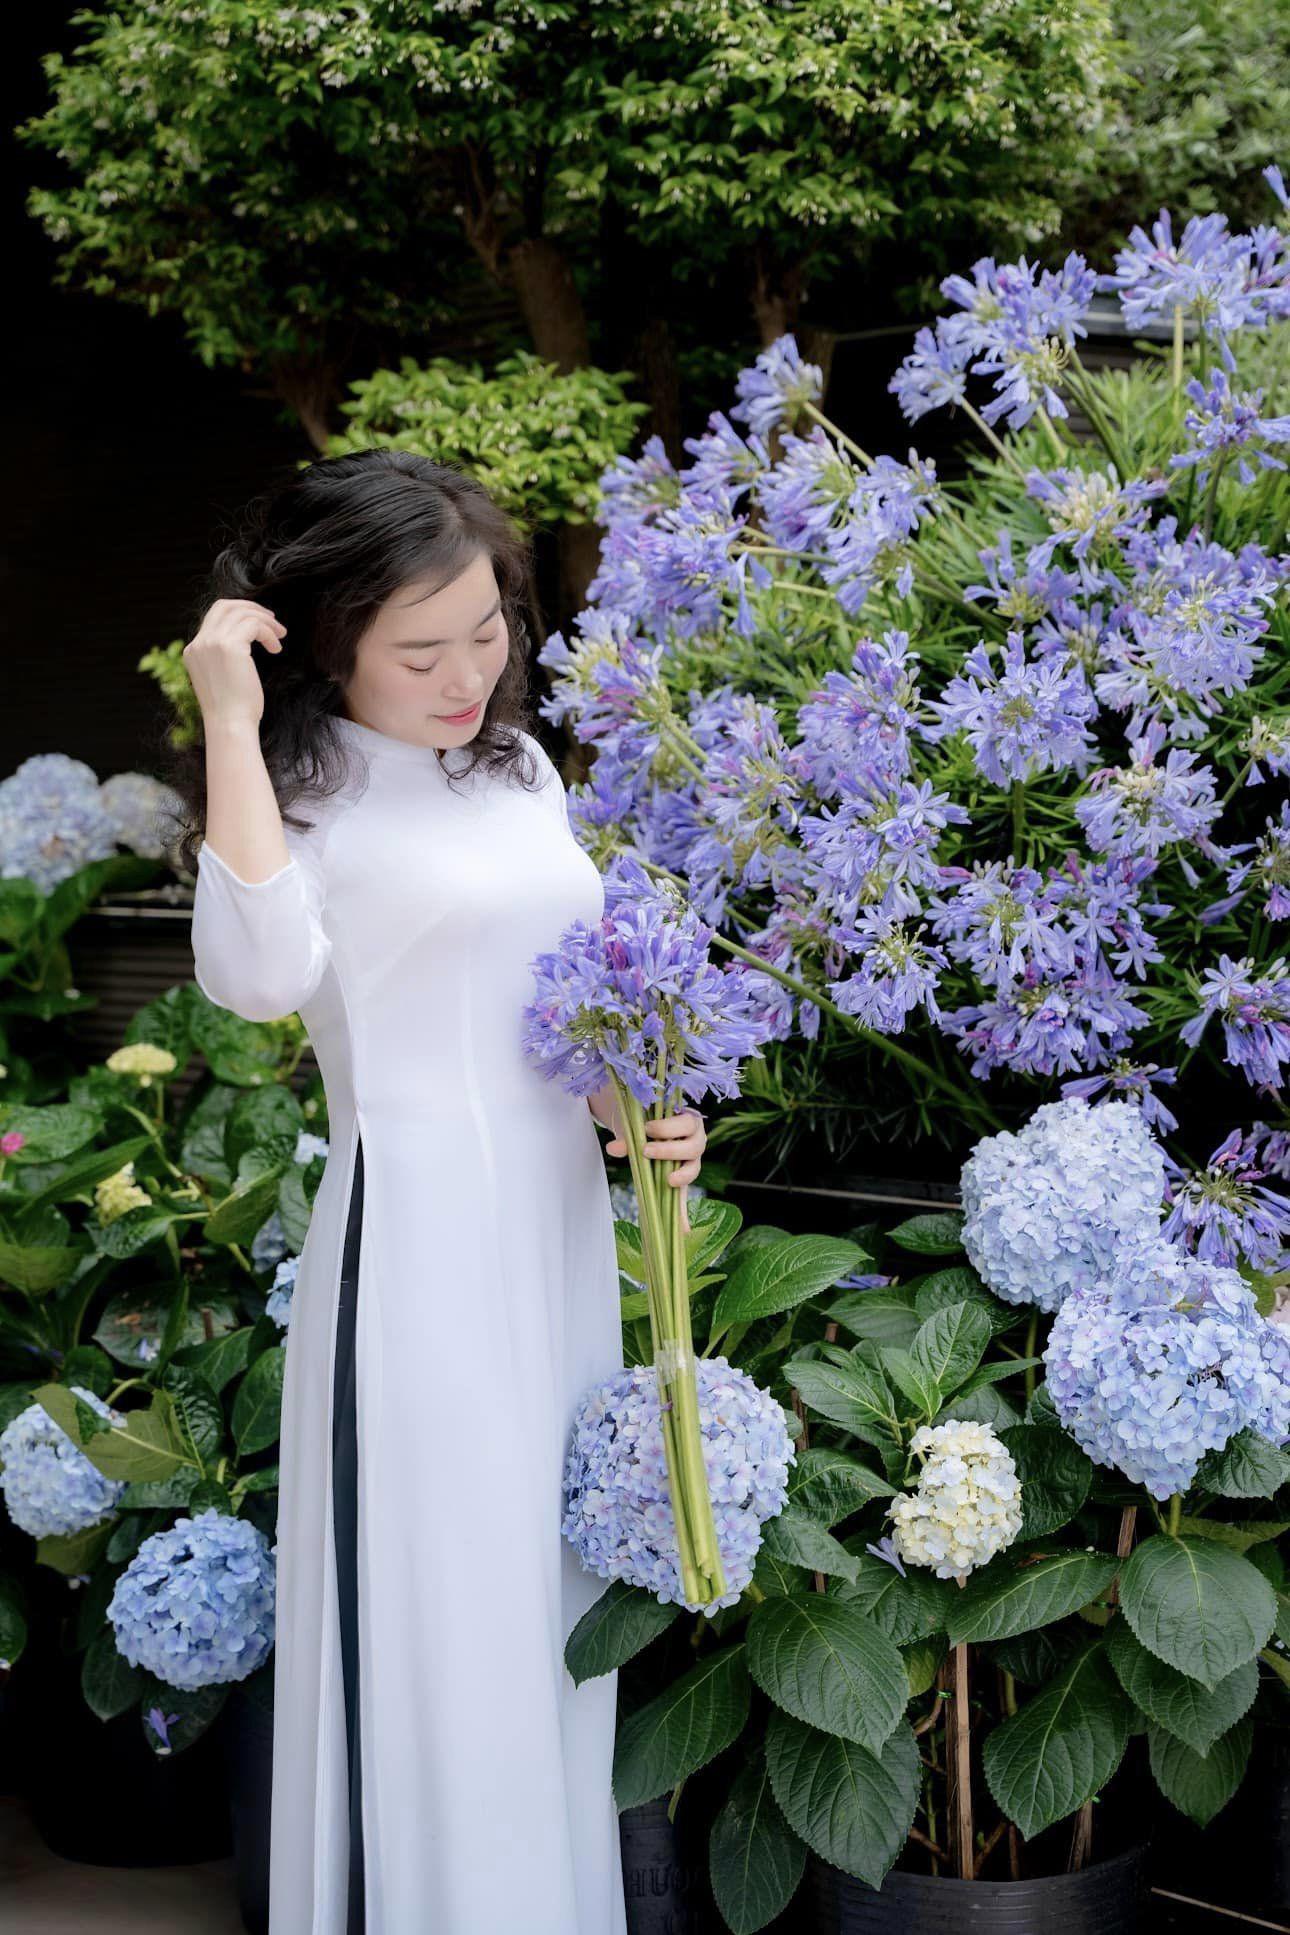 Mẹ đảm cho biết, hoa cẩm tú cầu có màu trắng, hồng, xanh. Khi thêm màu xanh tím của hoa Arapang sẽ rất nổi nên chị đã mua 70 bó hoa Arapang về điểm xuyết thêm.